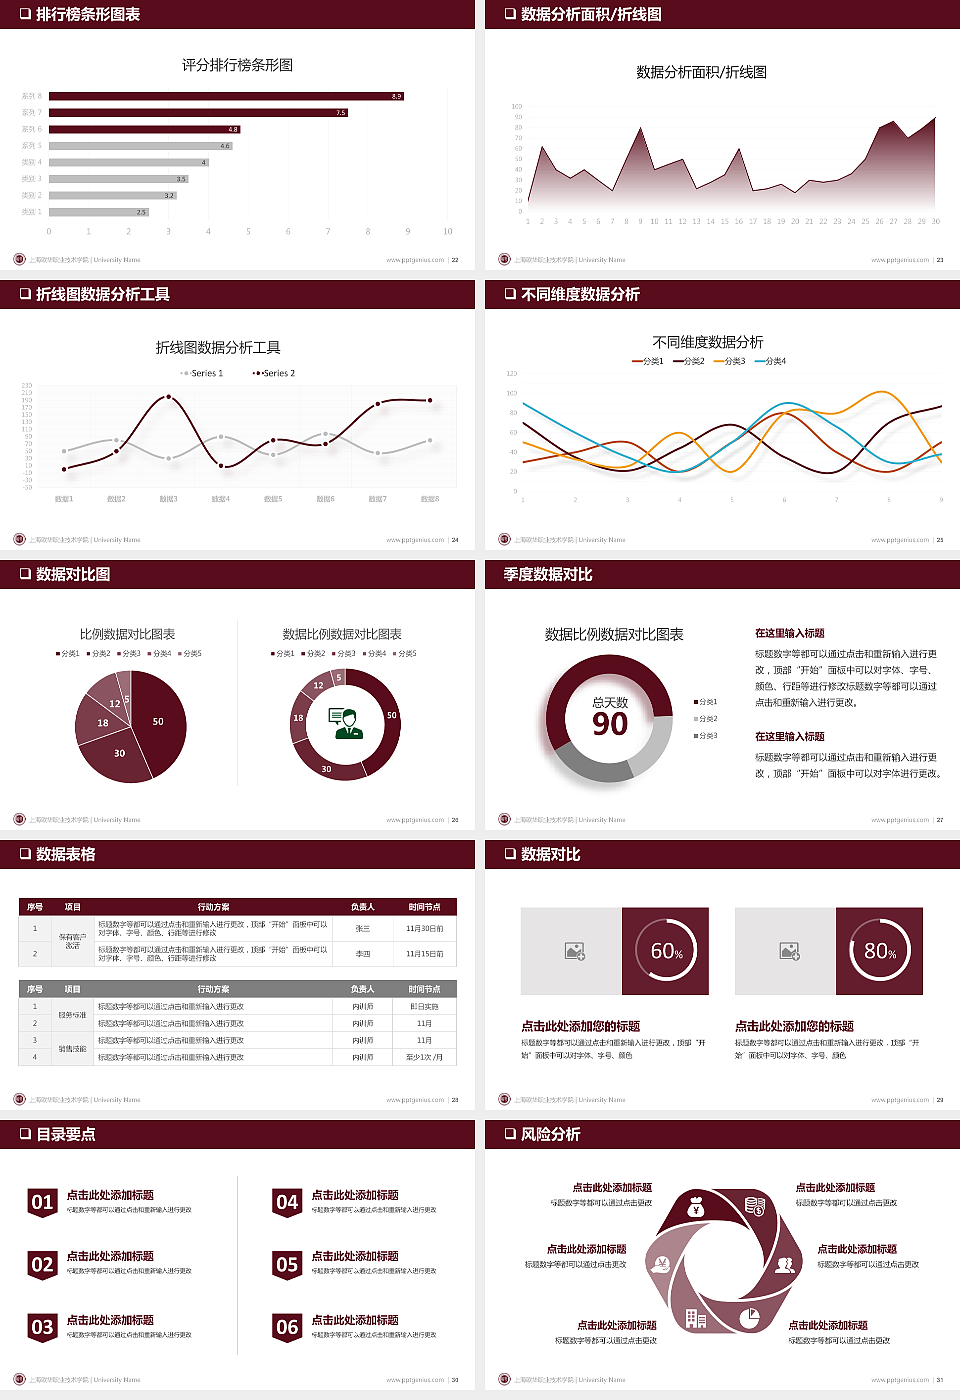 上海欧华职业技术学院PPT模板下载_幻灯片预览图4